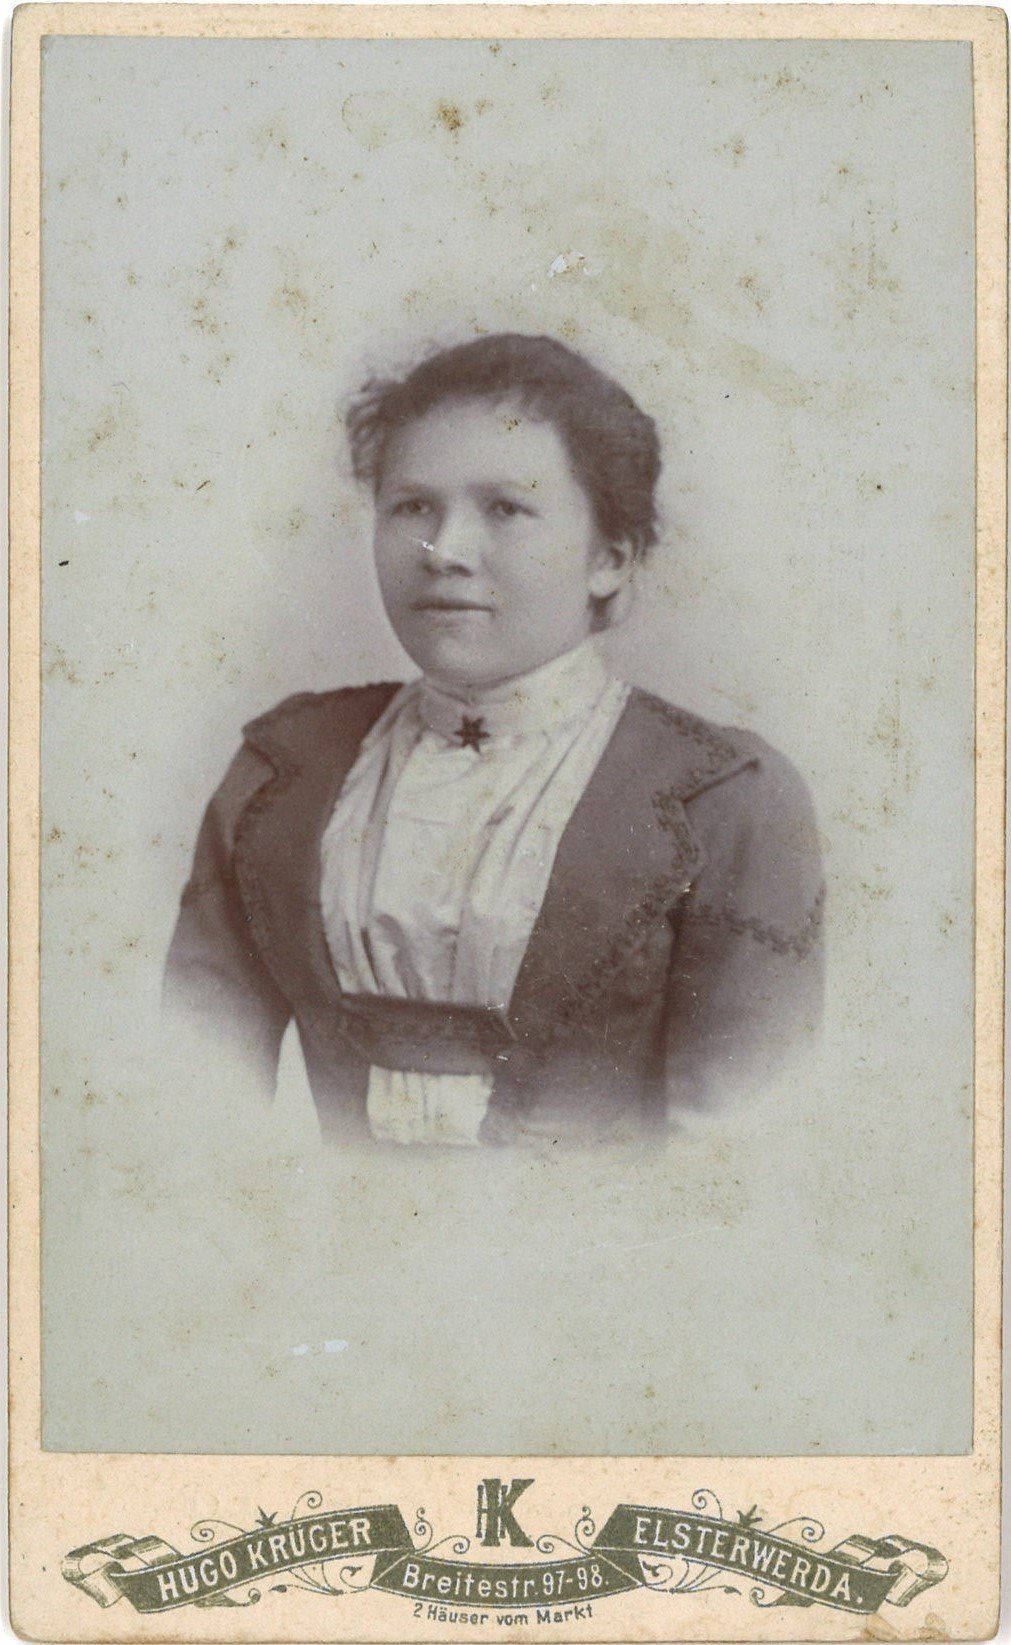 Unbekannte junge Frau (Elsterwerda) (Landesgeschichtliche Vereinigung für die Mark Brandenburg e.V., Archiv CC BY)